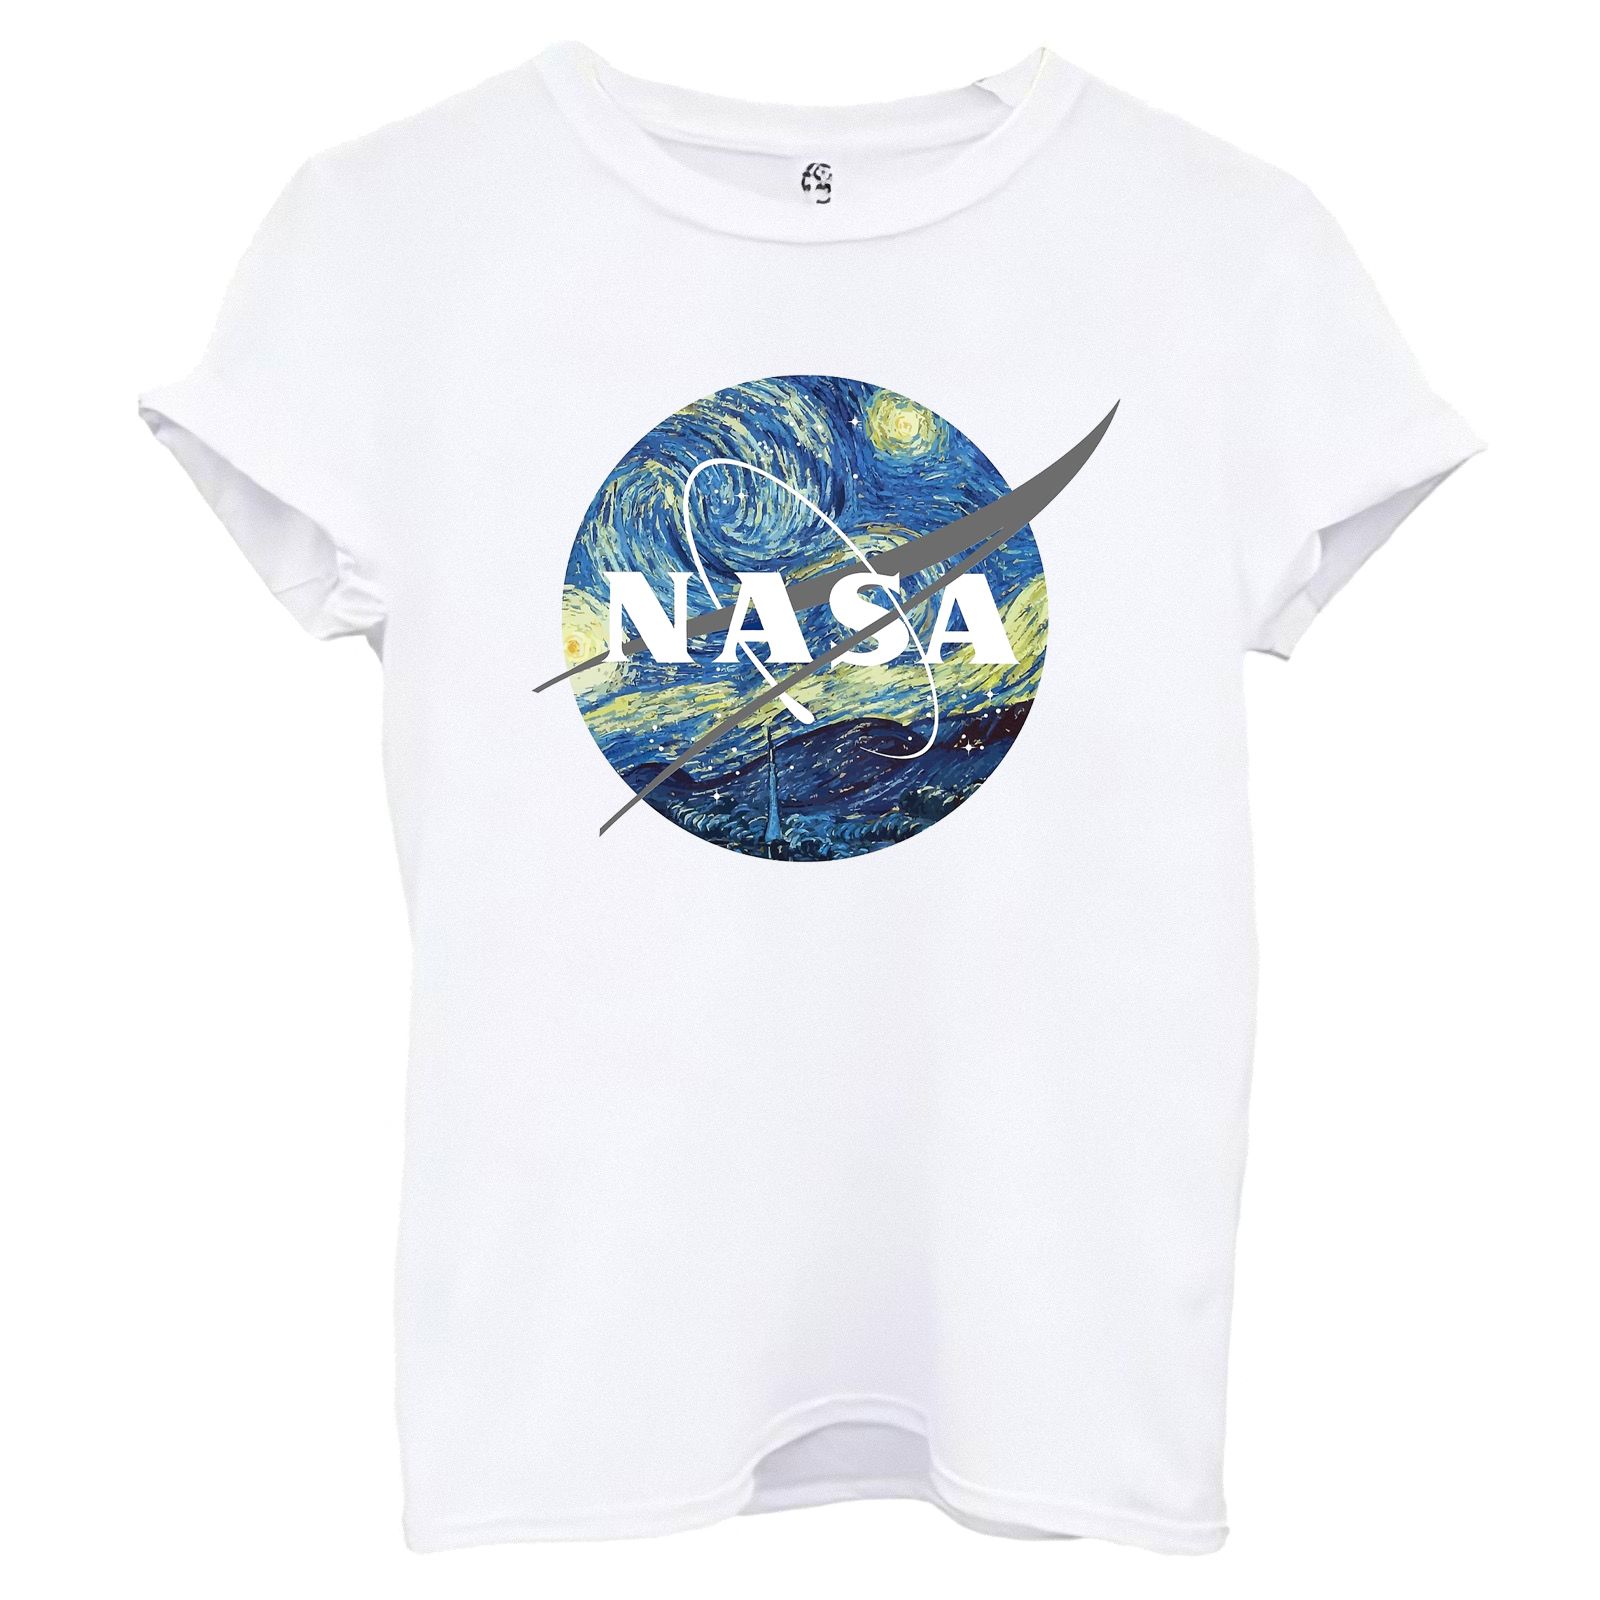 تی شرت آستین کوتاه زنانه اسد طرح ناسا کد 50 -  - 1